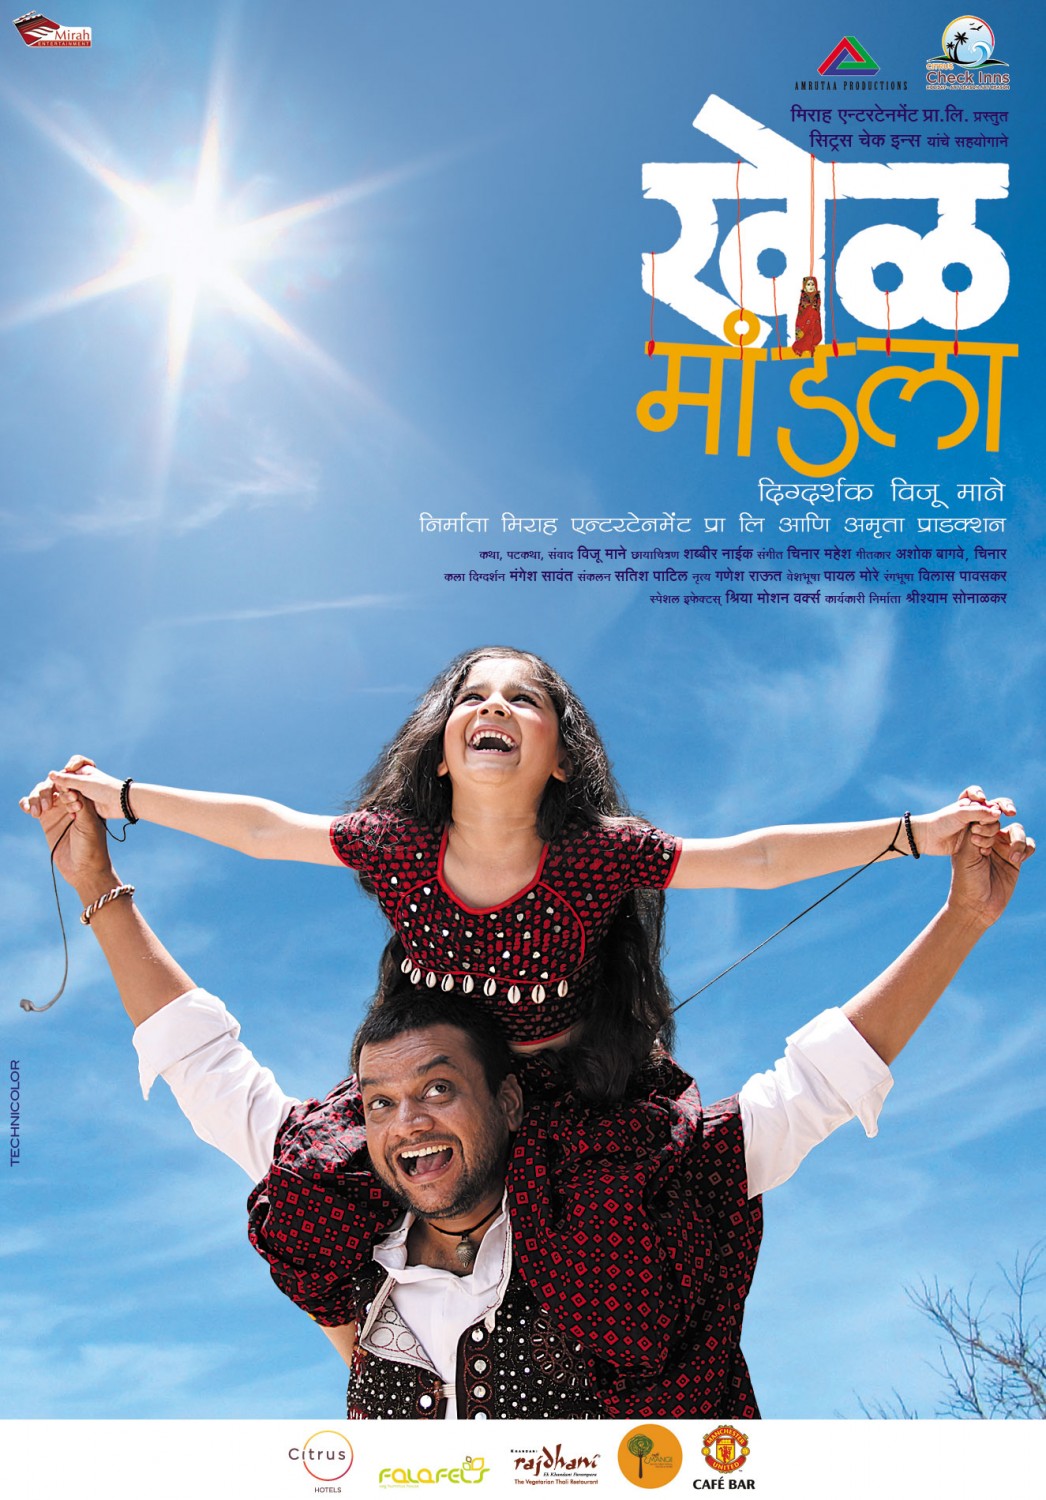 Extra Large Movie Poster Image for Khel Mandala (#9 of 13)